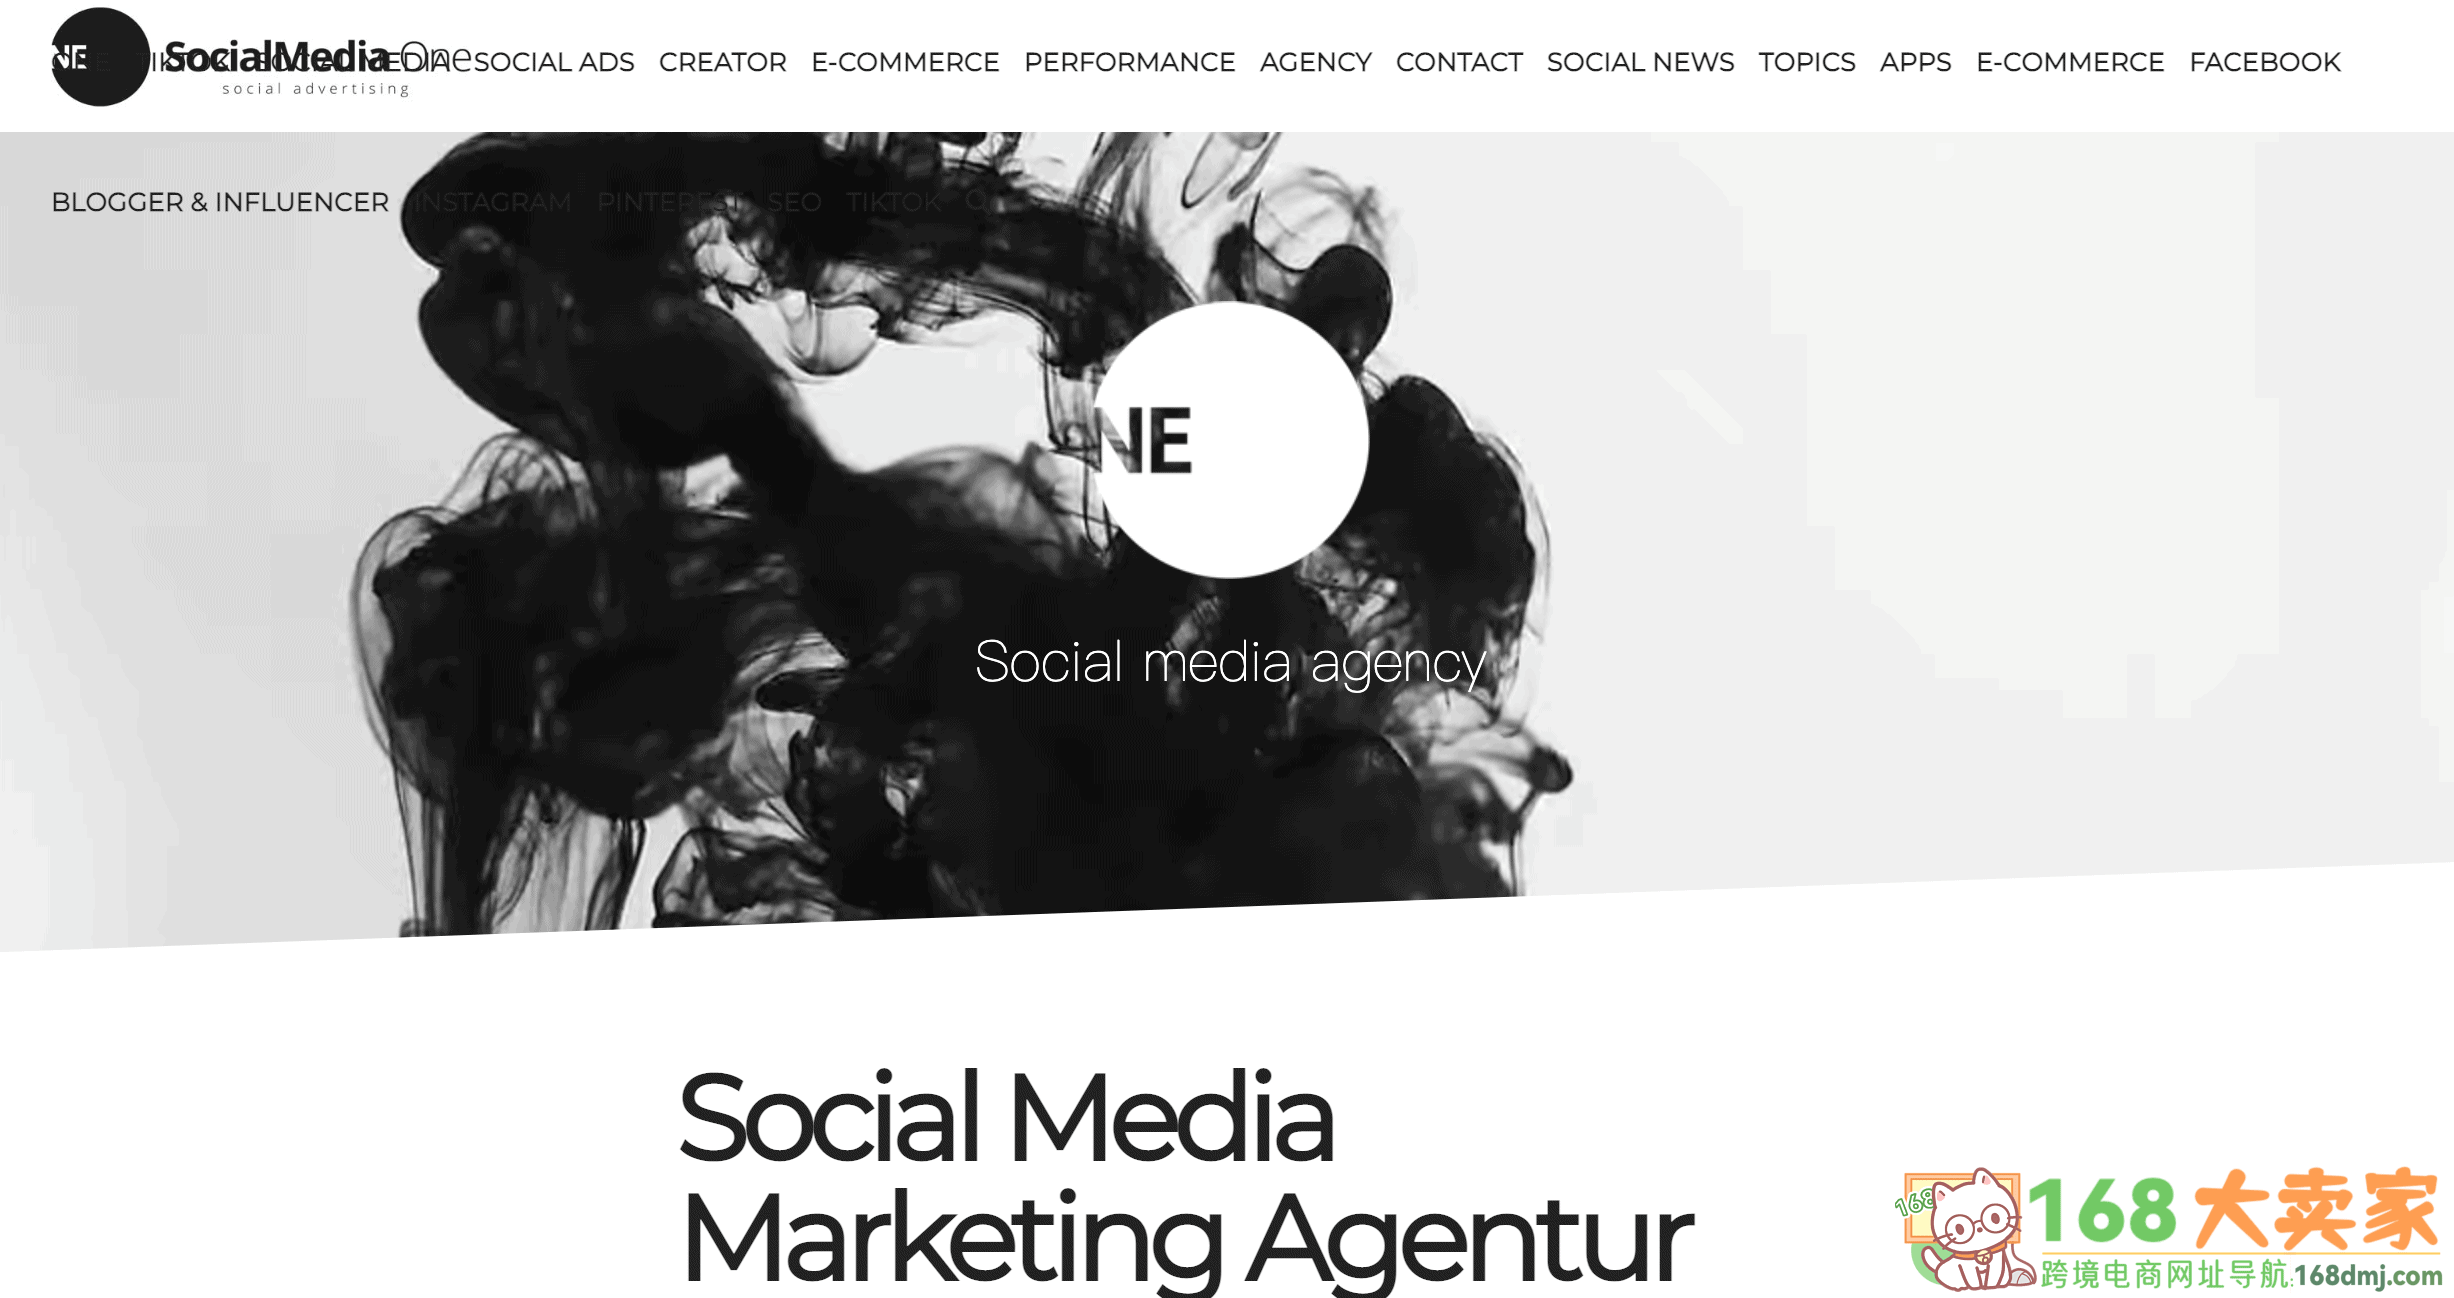 social media agency